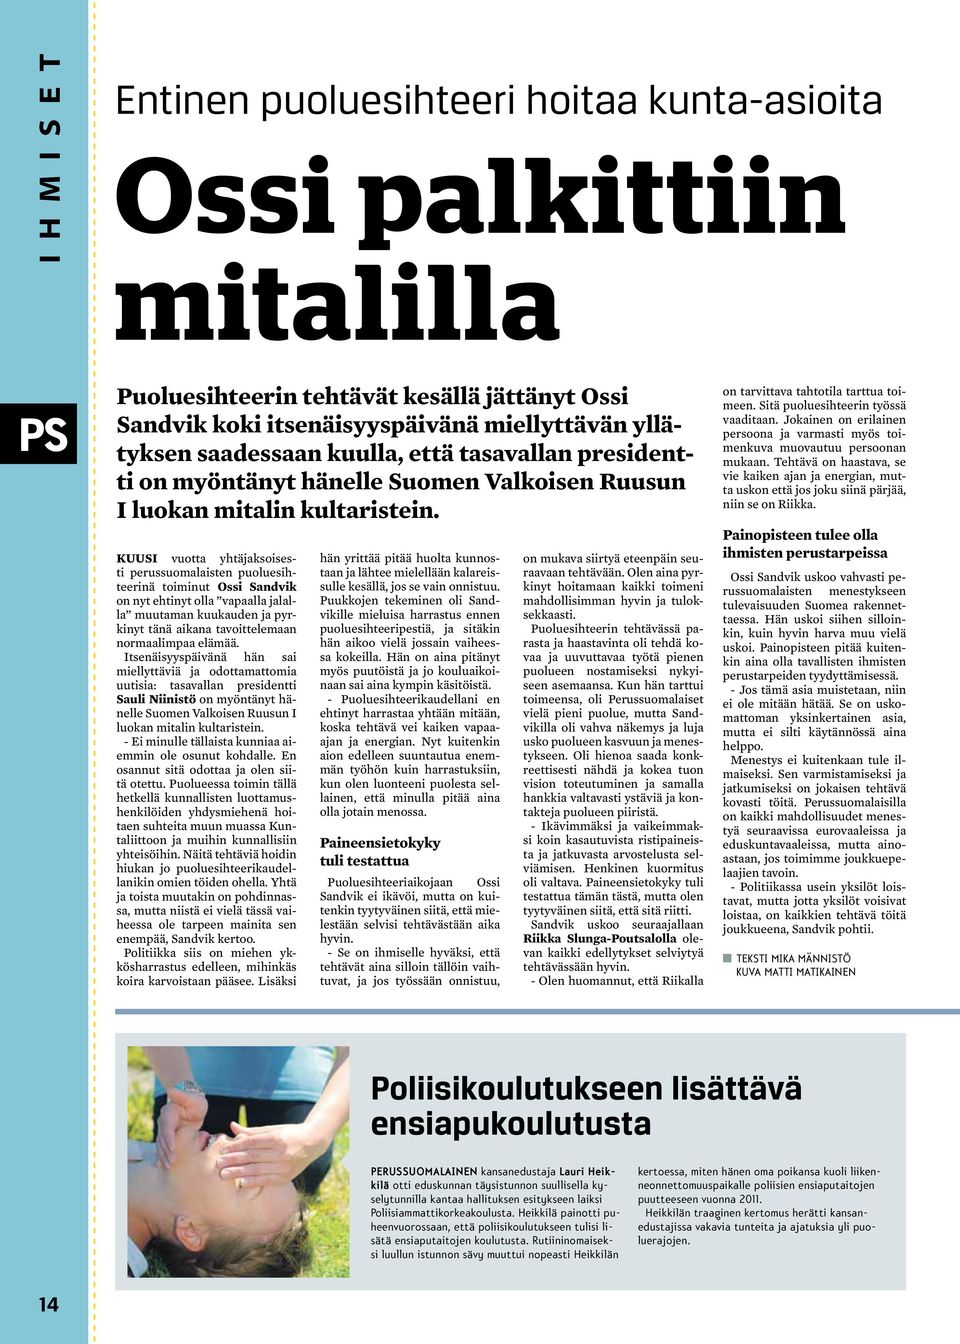 Kuusi vuotta yhtäjaksoisesti perussuomalaisten puoluesihteerinä toiminut Ossi Sandvik on nyt ehtinyt olla vapaalla jalalla muutaman kuukauden ja pyrkinyt tänä aikana tavoittelemaan normaalimpaa